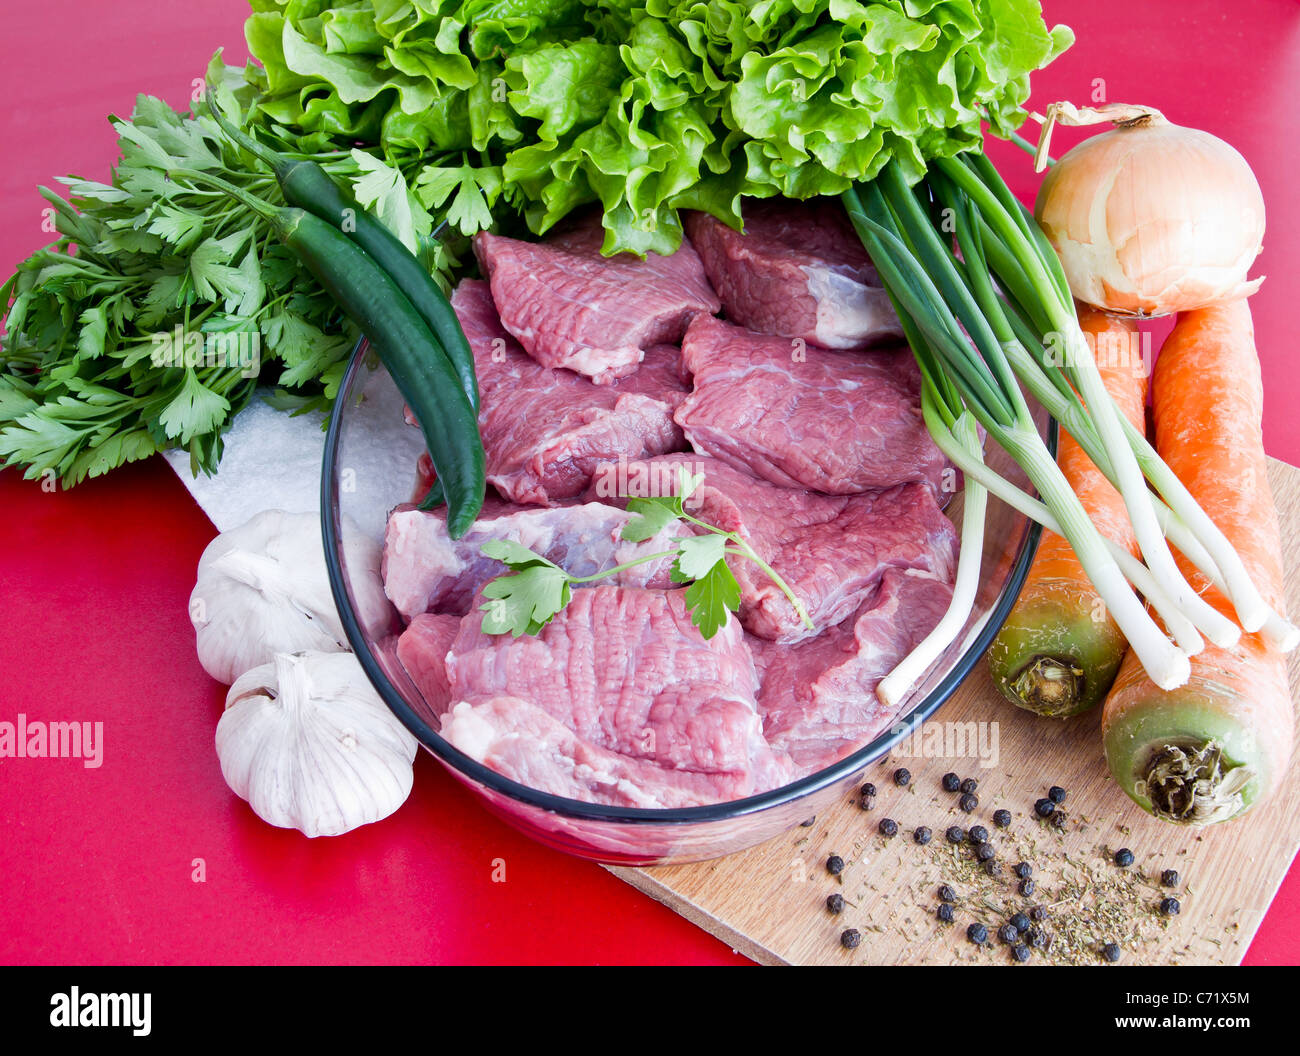 Carni bovine fresche con verdura pronta per il preparato Foto Stock